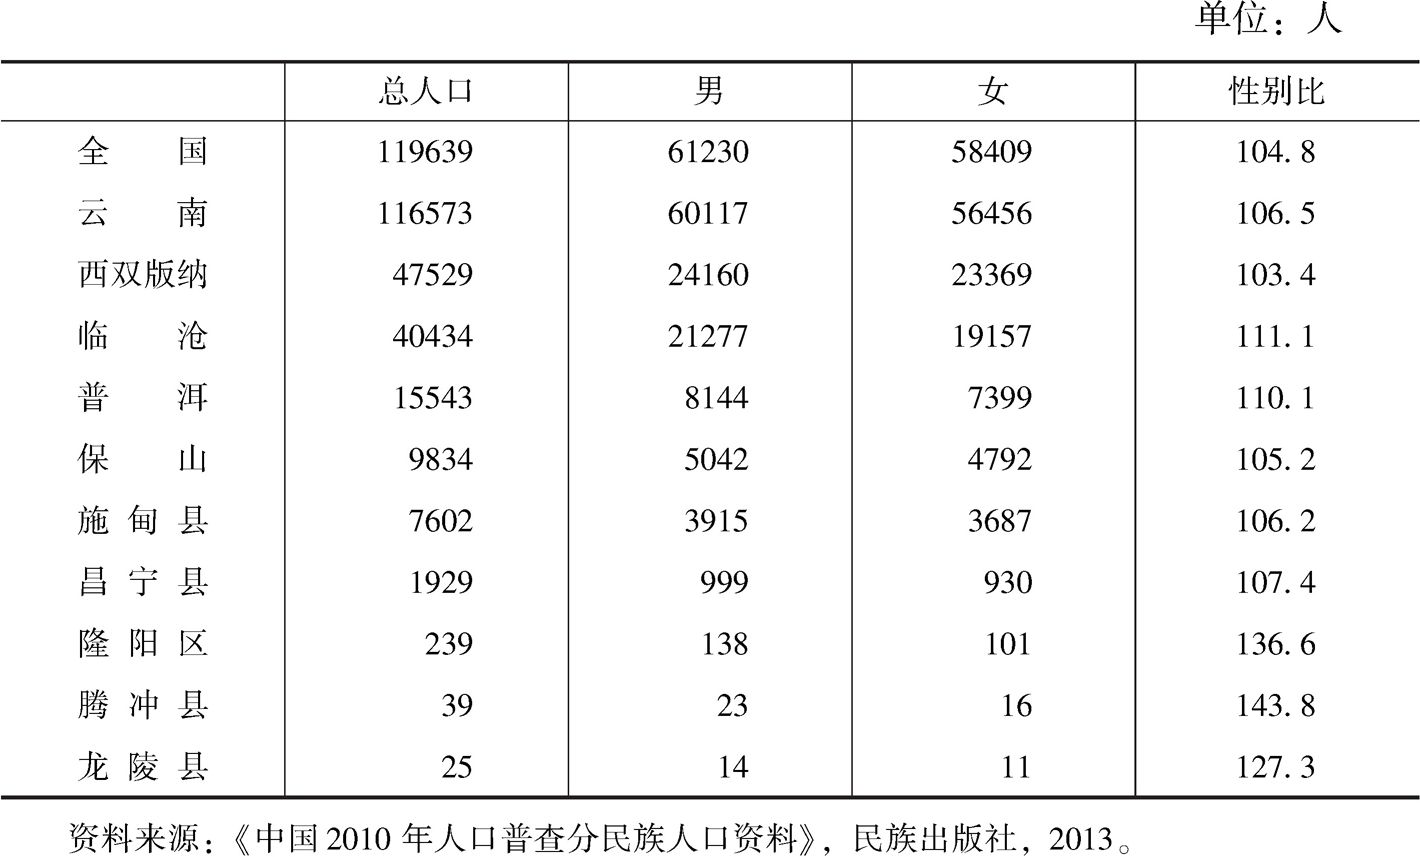 表1-7 云南省2010年布朗族人口普查数